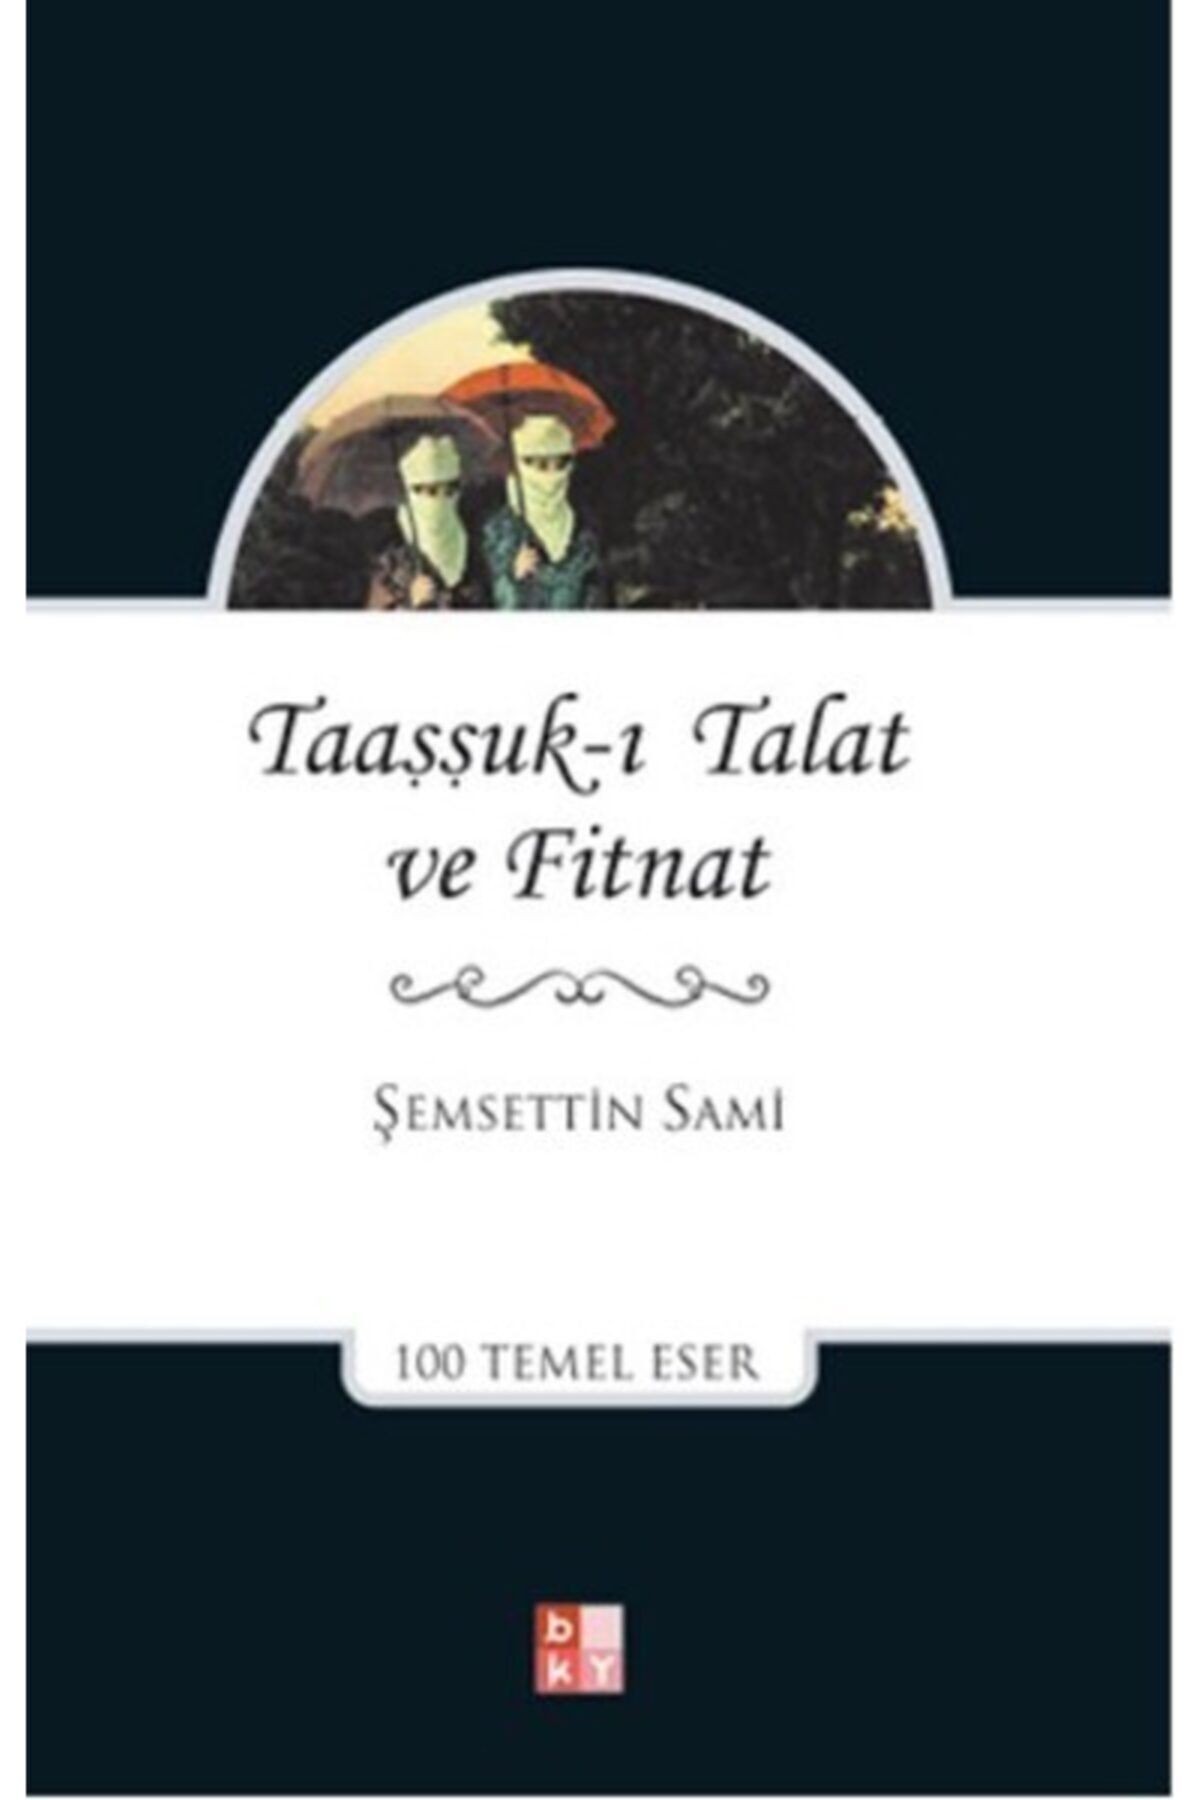 Babıali Kültür Yayıncılığı Taaşşukı Talat Ve Fitnat